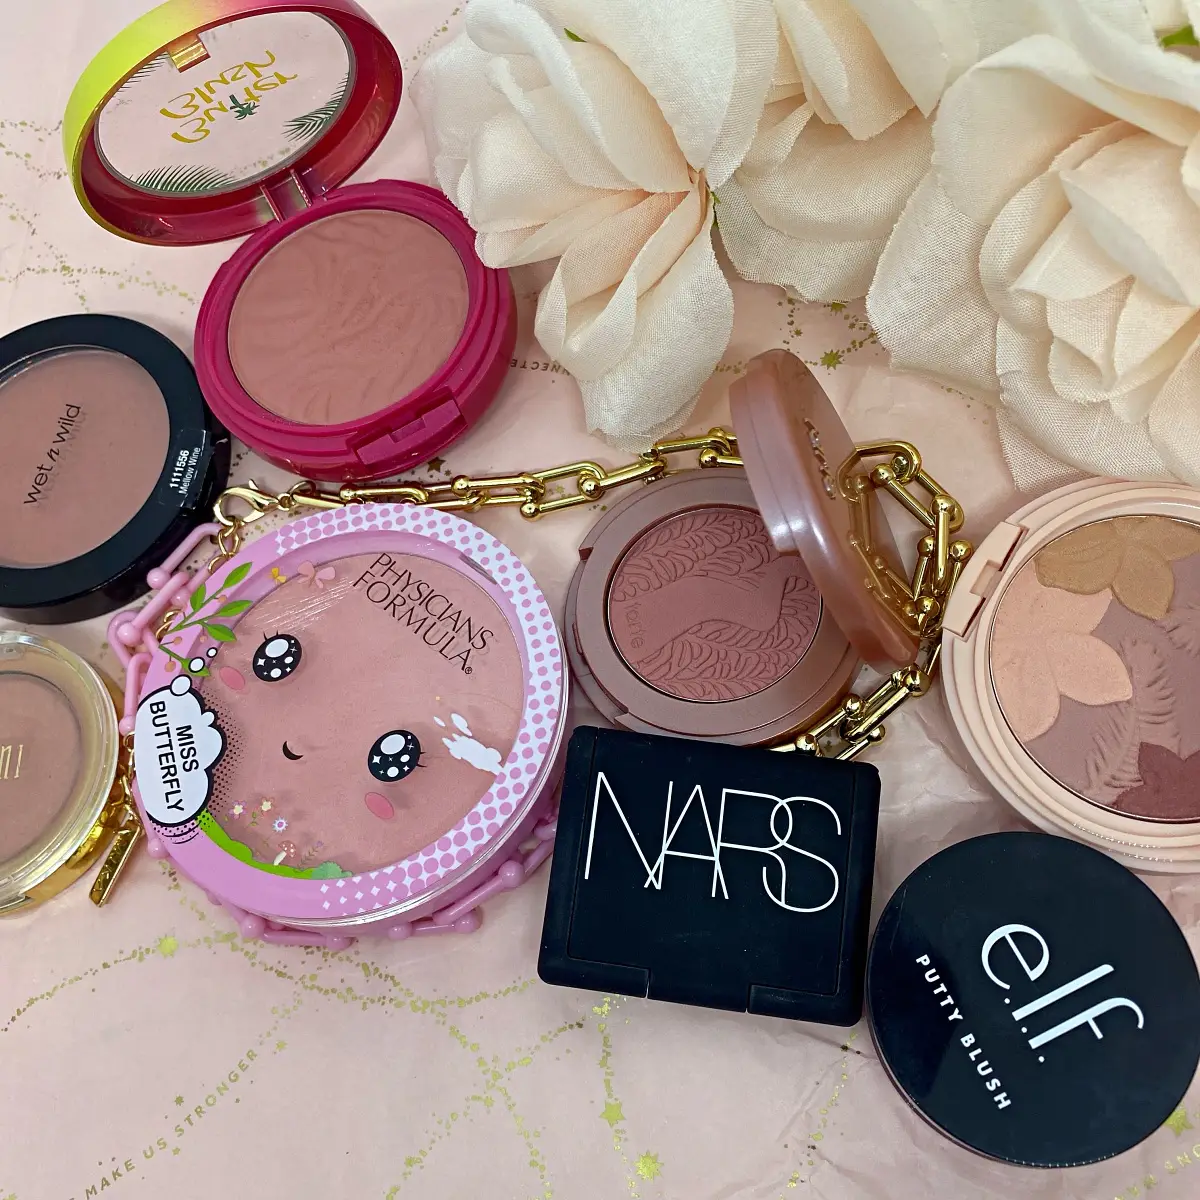 Review: Makeup: NARS powder blush - My Women Stuff